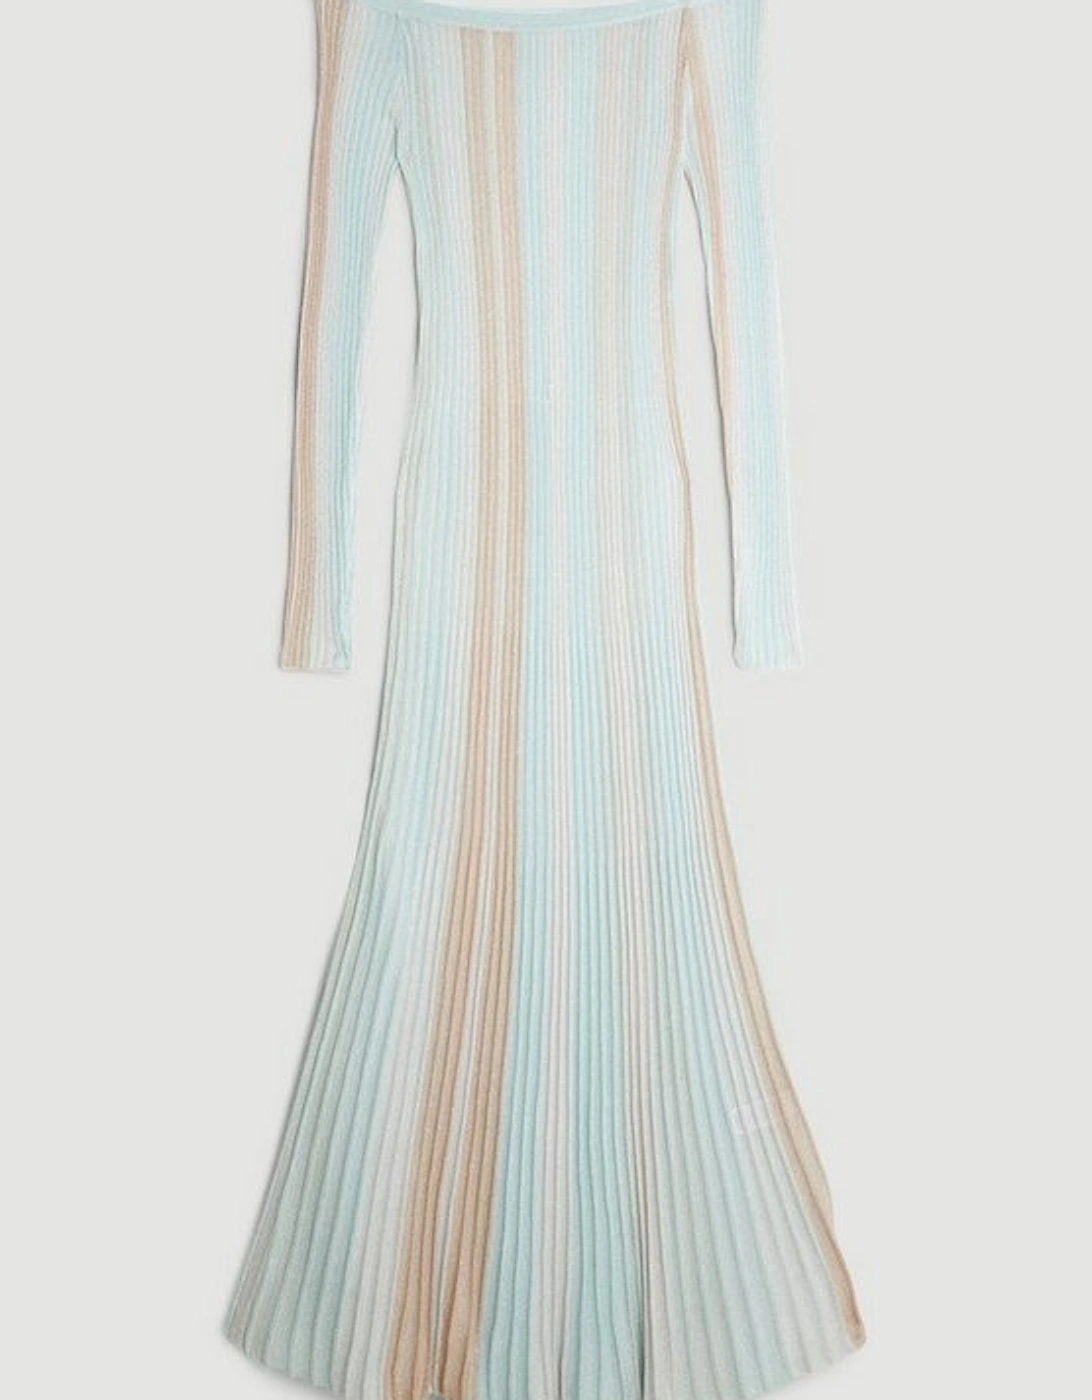 Slinky Viscose Slash Neck Striped Knit Midaxi Dress